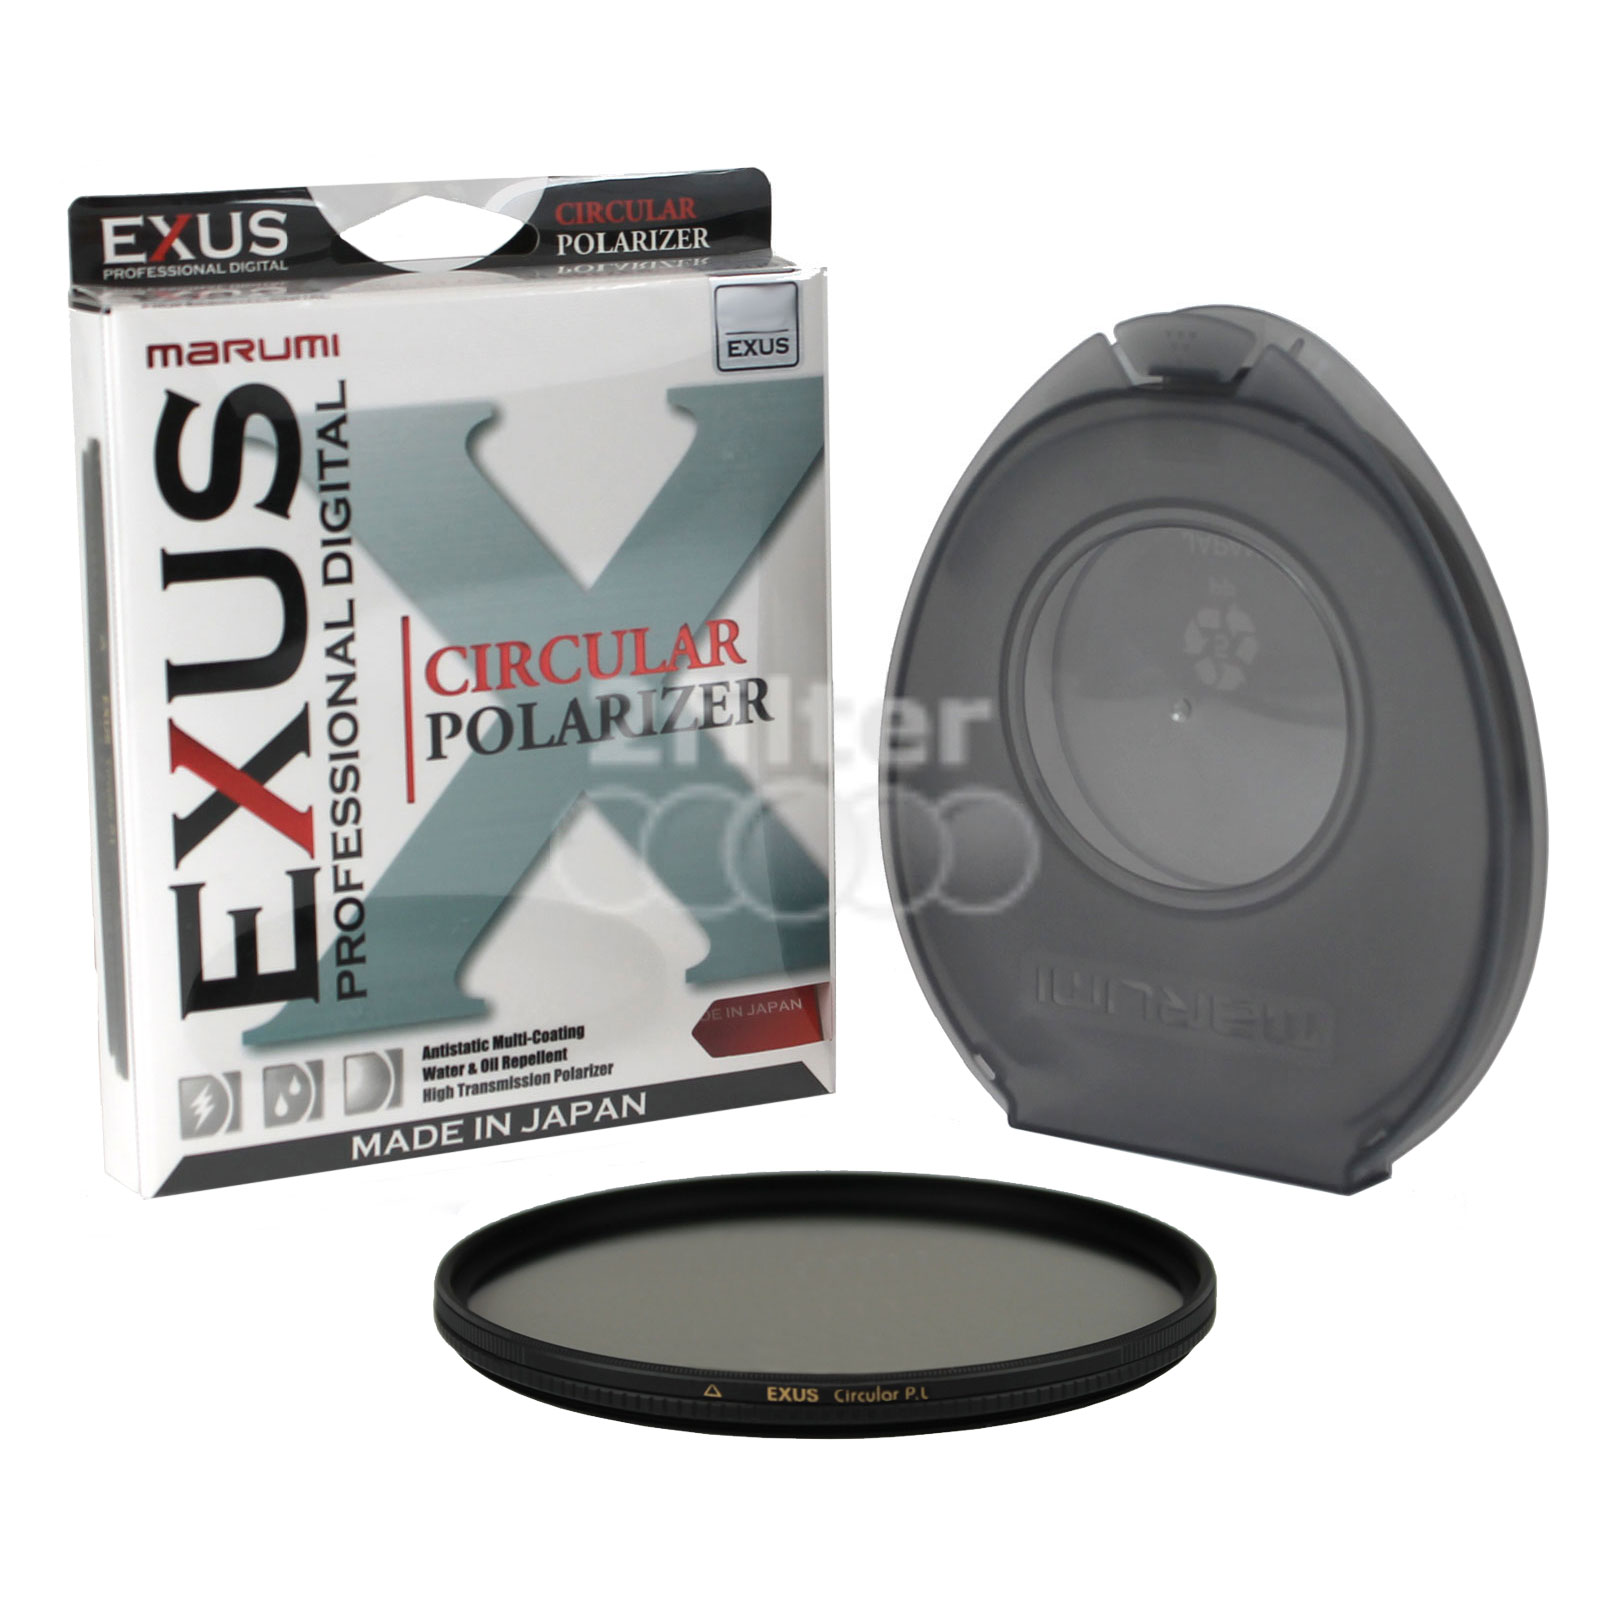 EXUS-Circular-Polarizer-Filter-with-Box